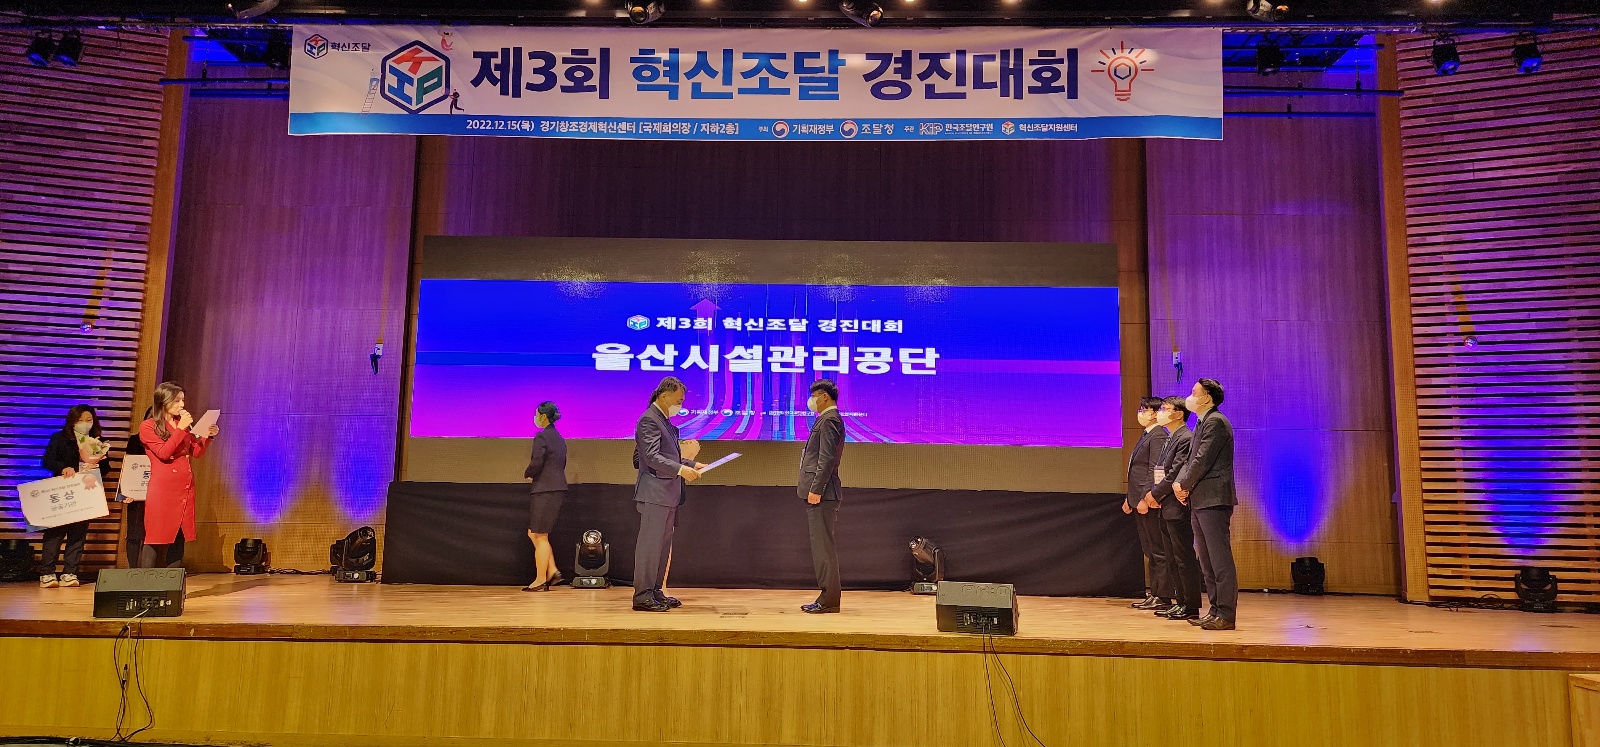 제3회 혁신조달 경진대회 '조달청장상' 수상